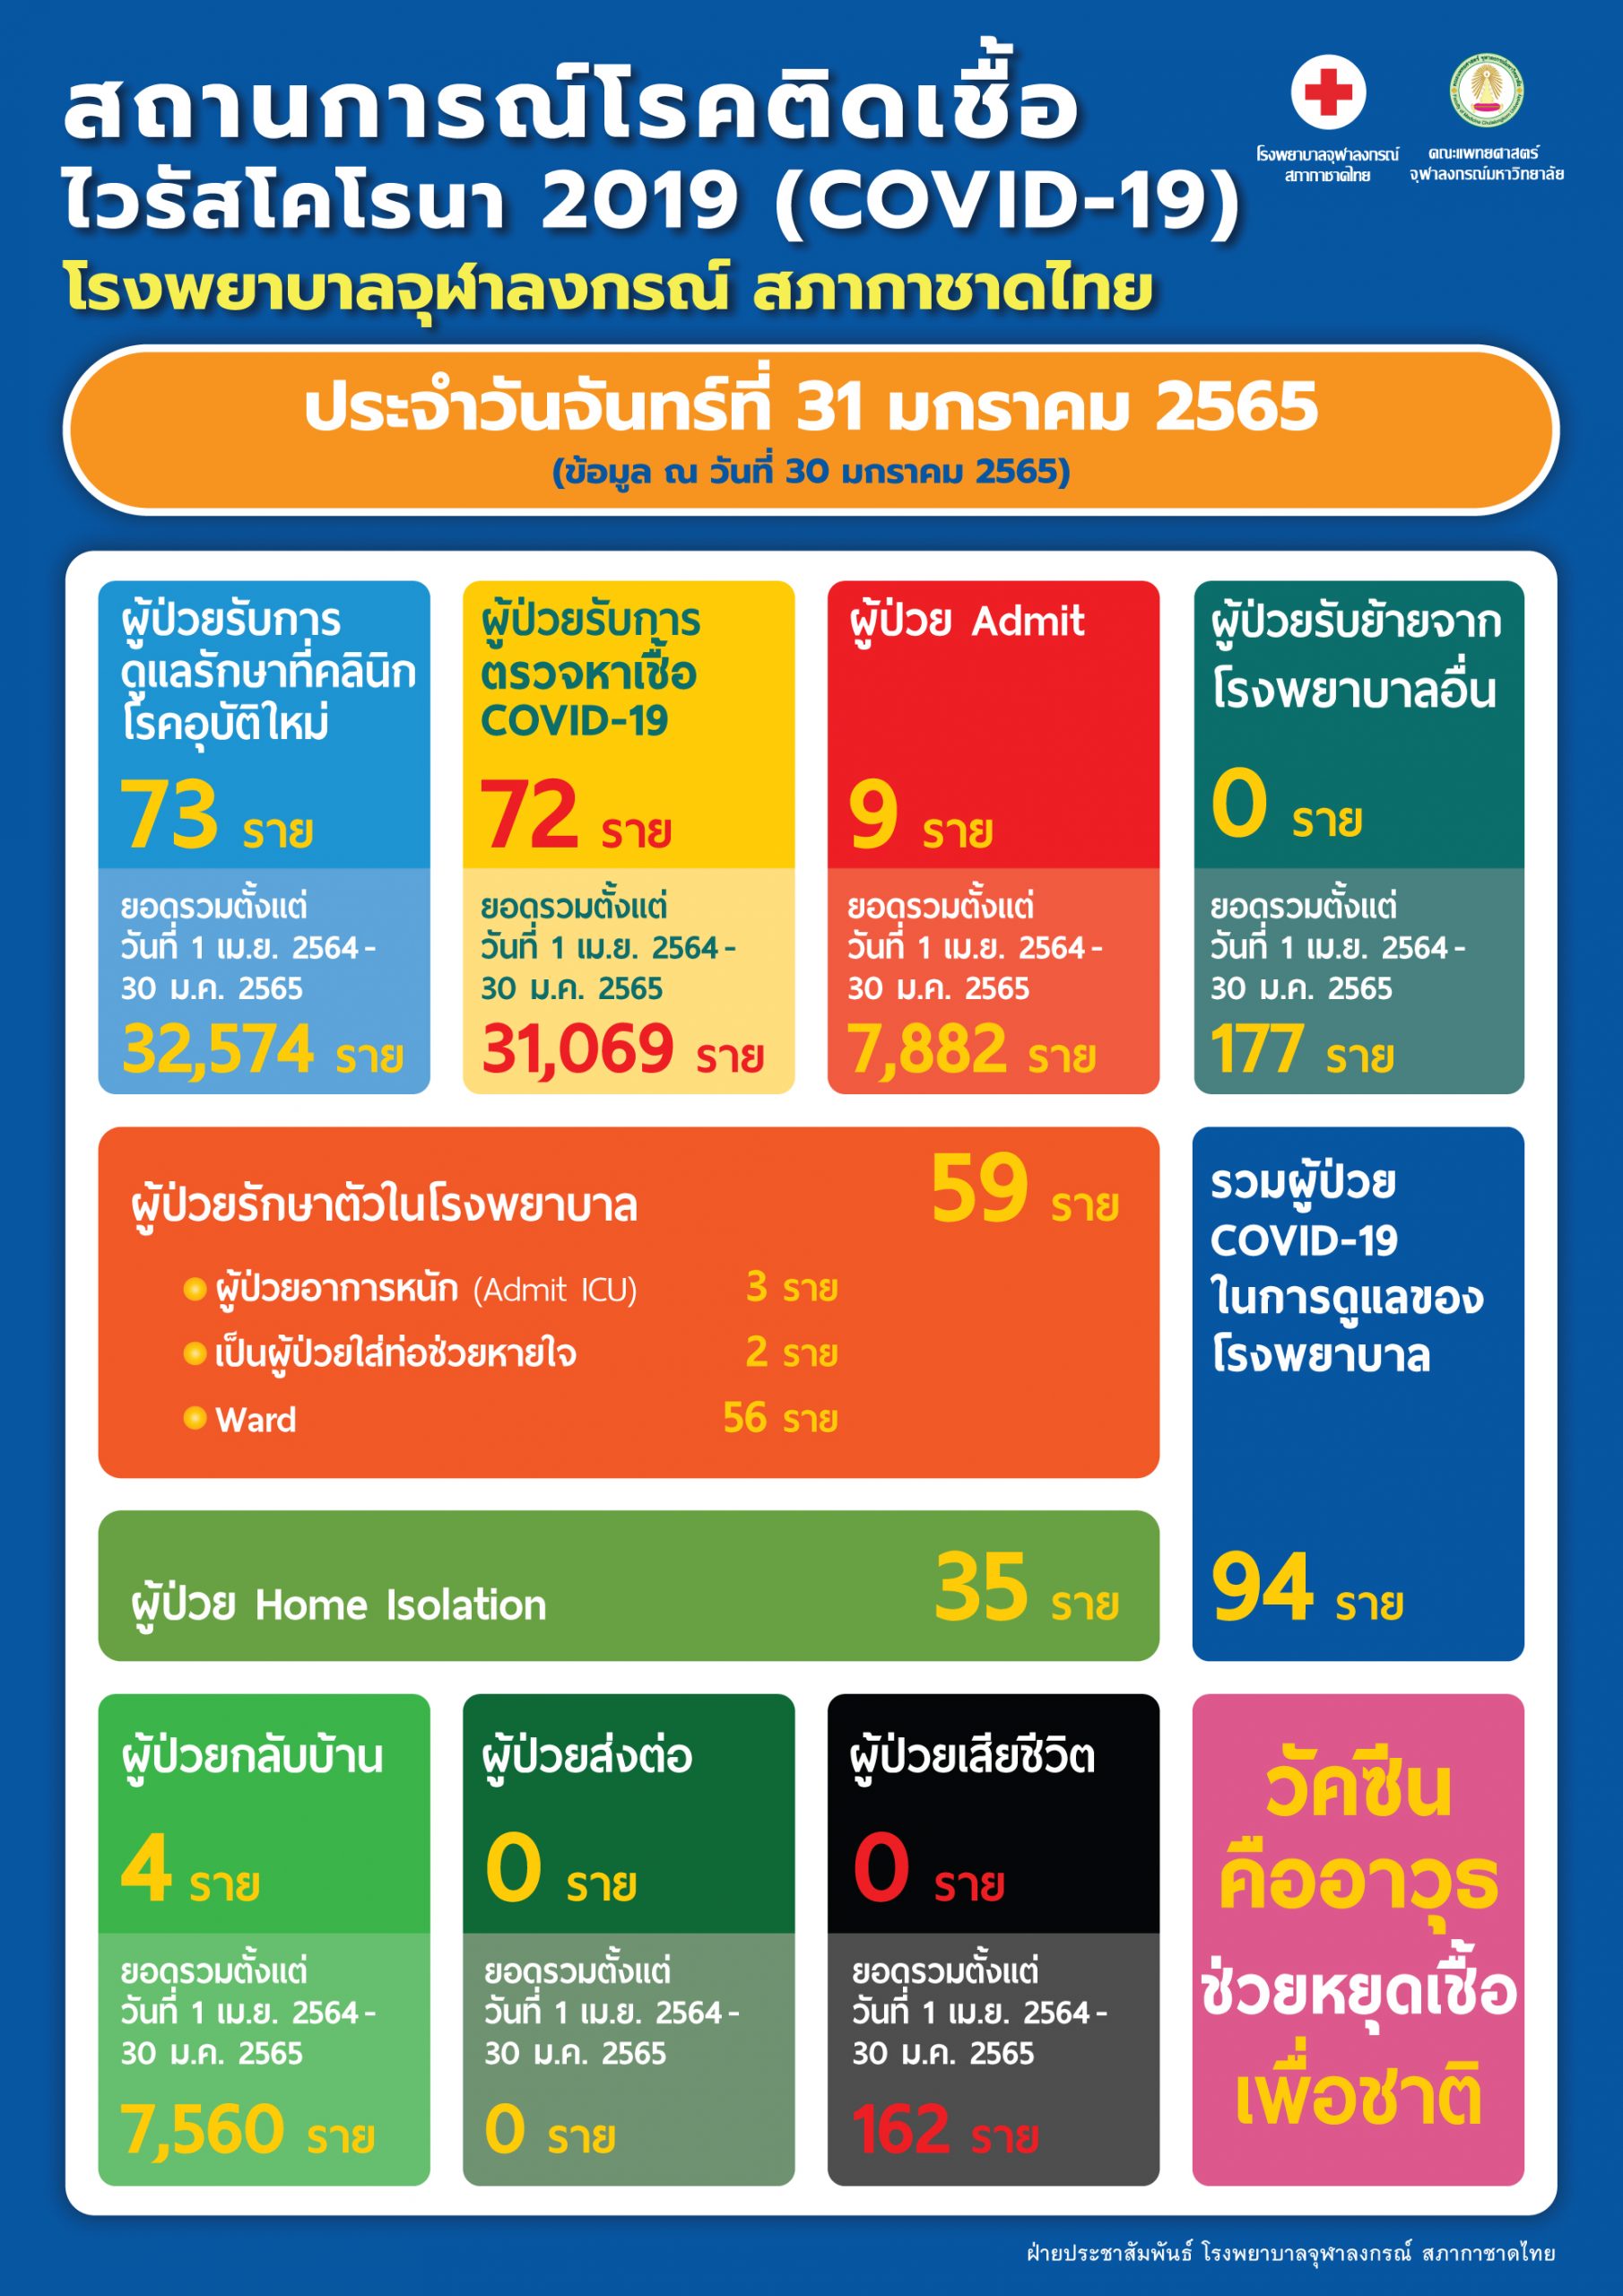 สถานการณ์โรคติดเชื้อไวรัสโคโรนา 2019 (COVID-19) โรงพยาบาลจุฬาลงกรณ์ สภากาชาดไทย ประจำวันจันทร์ที่ 31 มกราคม 2565